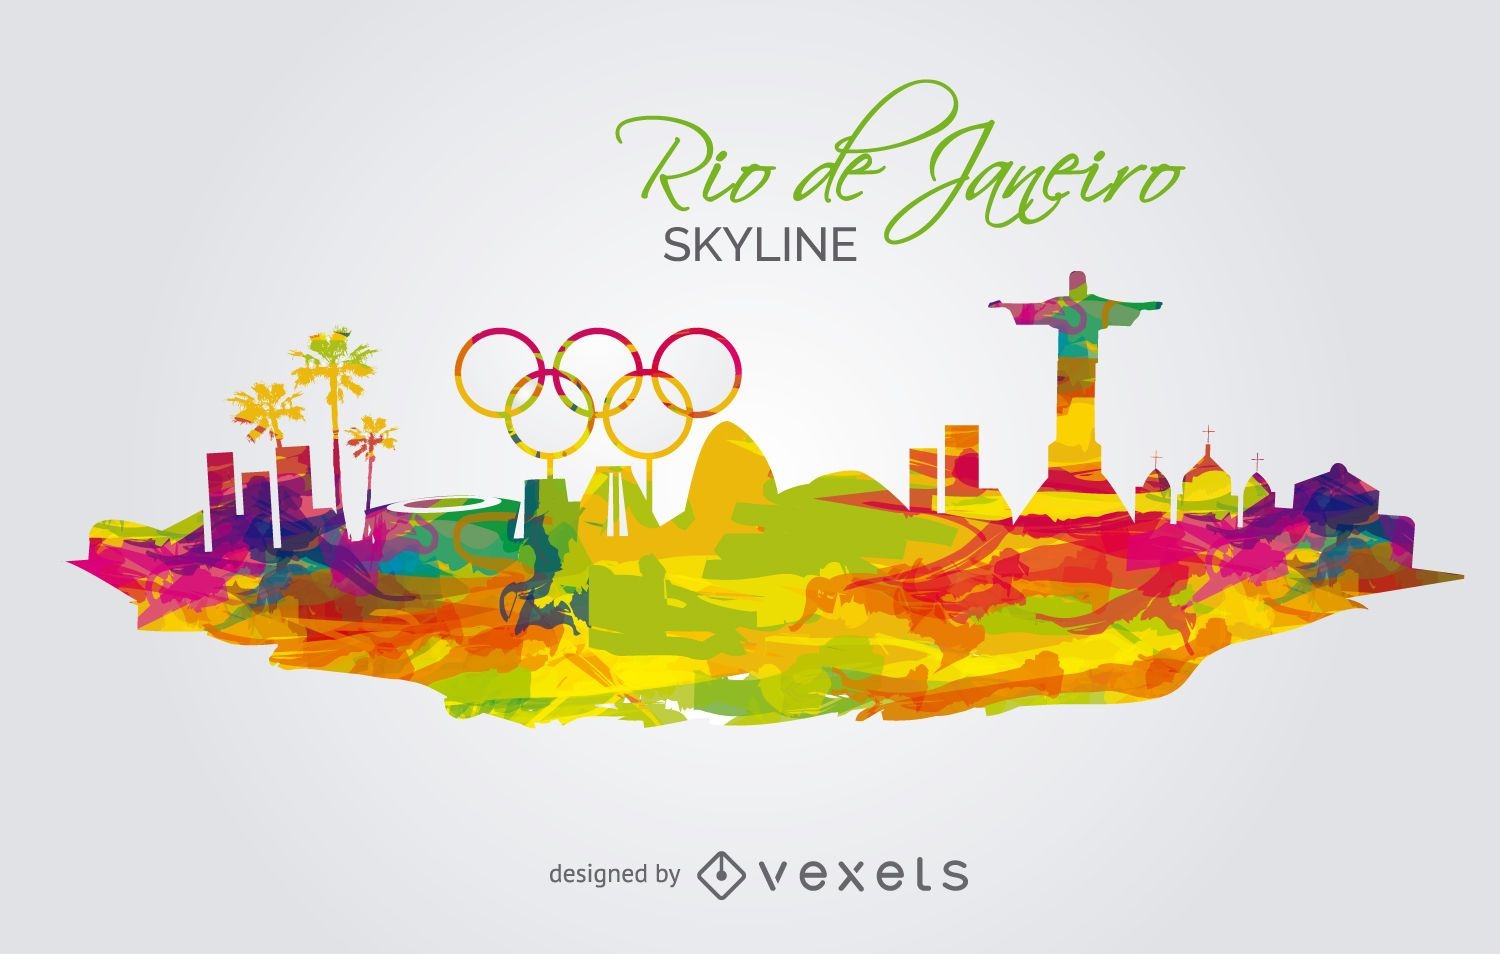 Olympics 2016-Rio de Janeiro Skyline